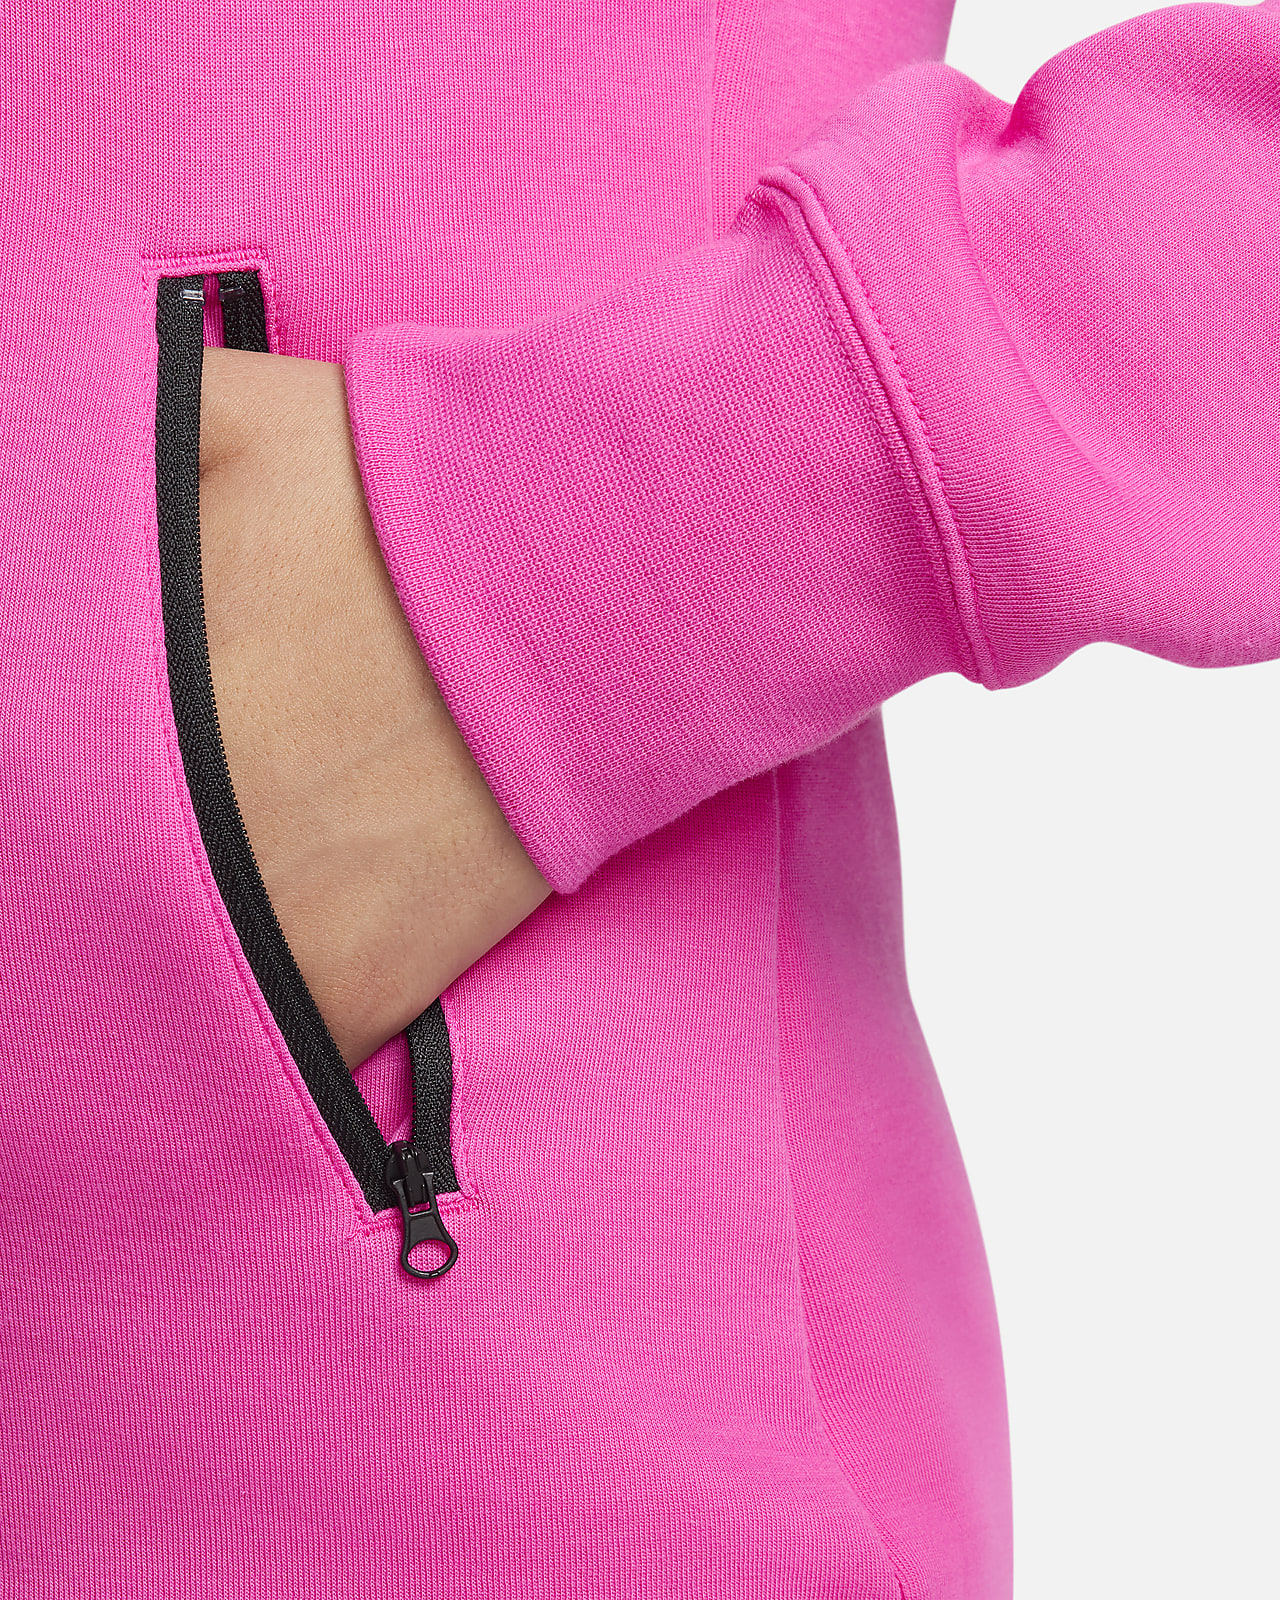 Nike Sportswear Women's Tech Fleece Windrunner Full-Zip Hoodie